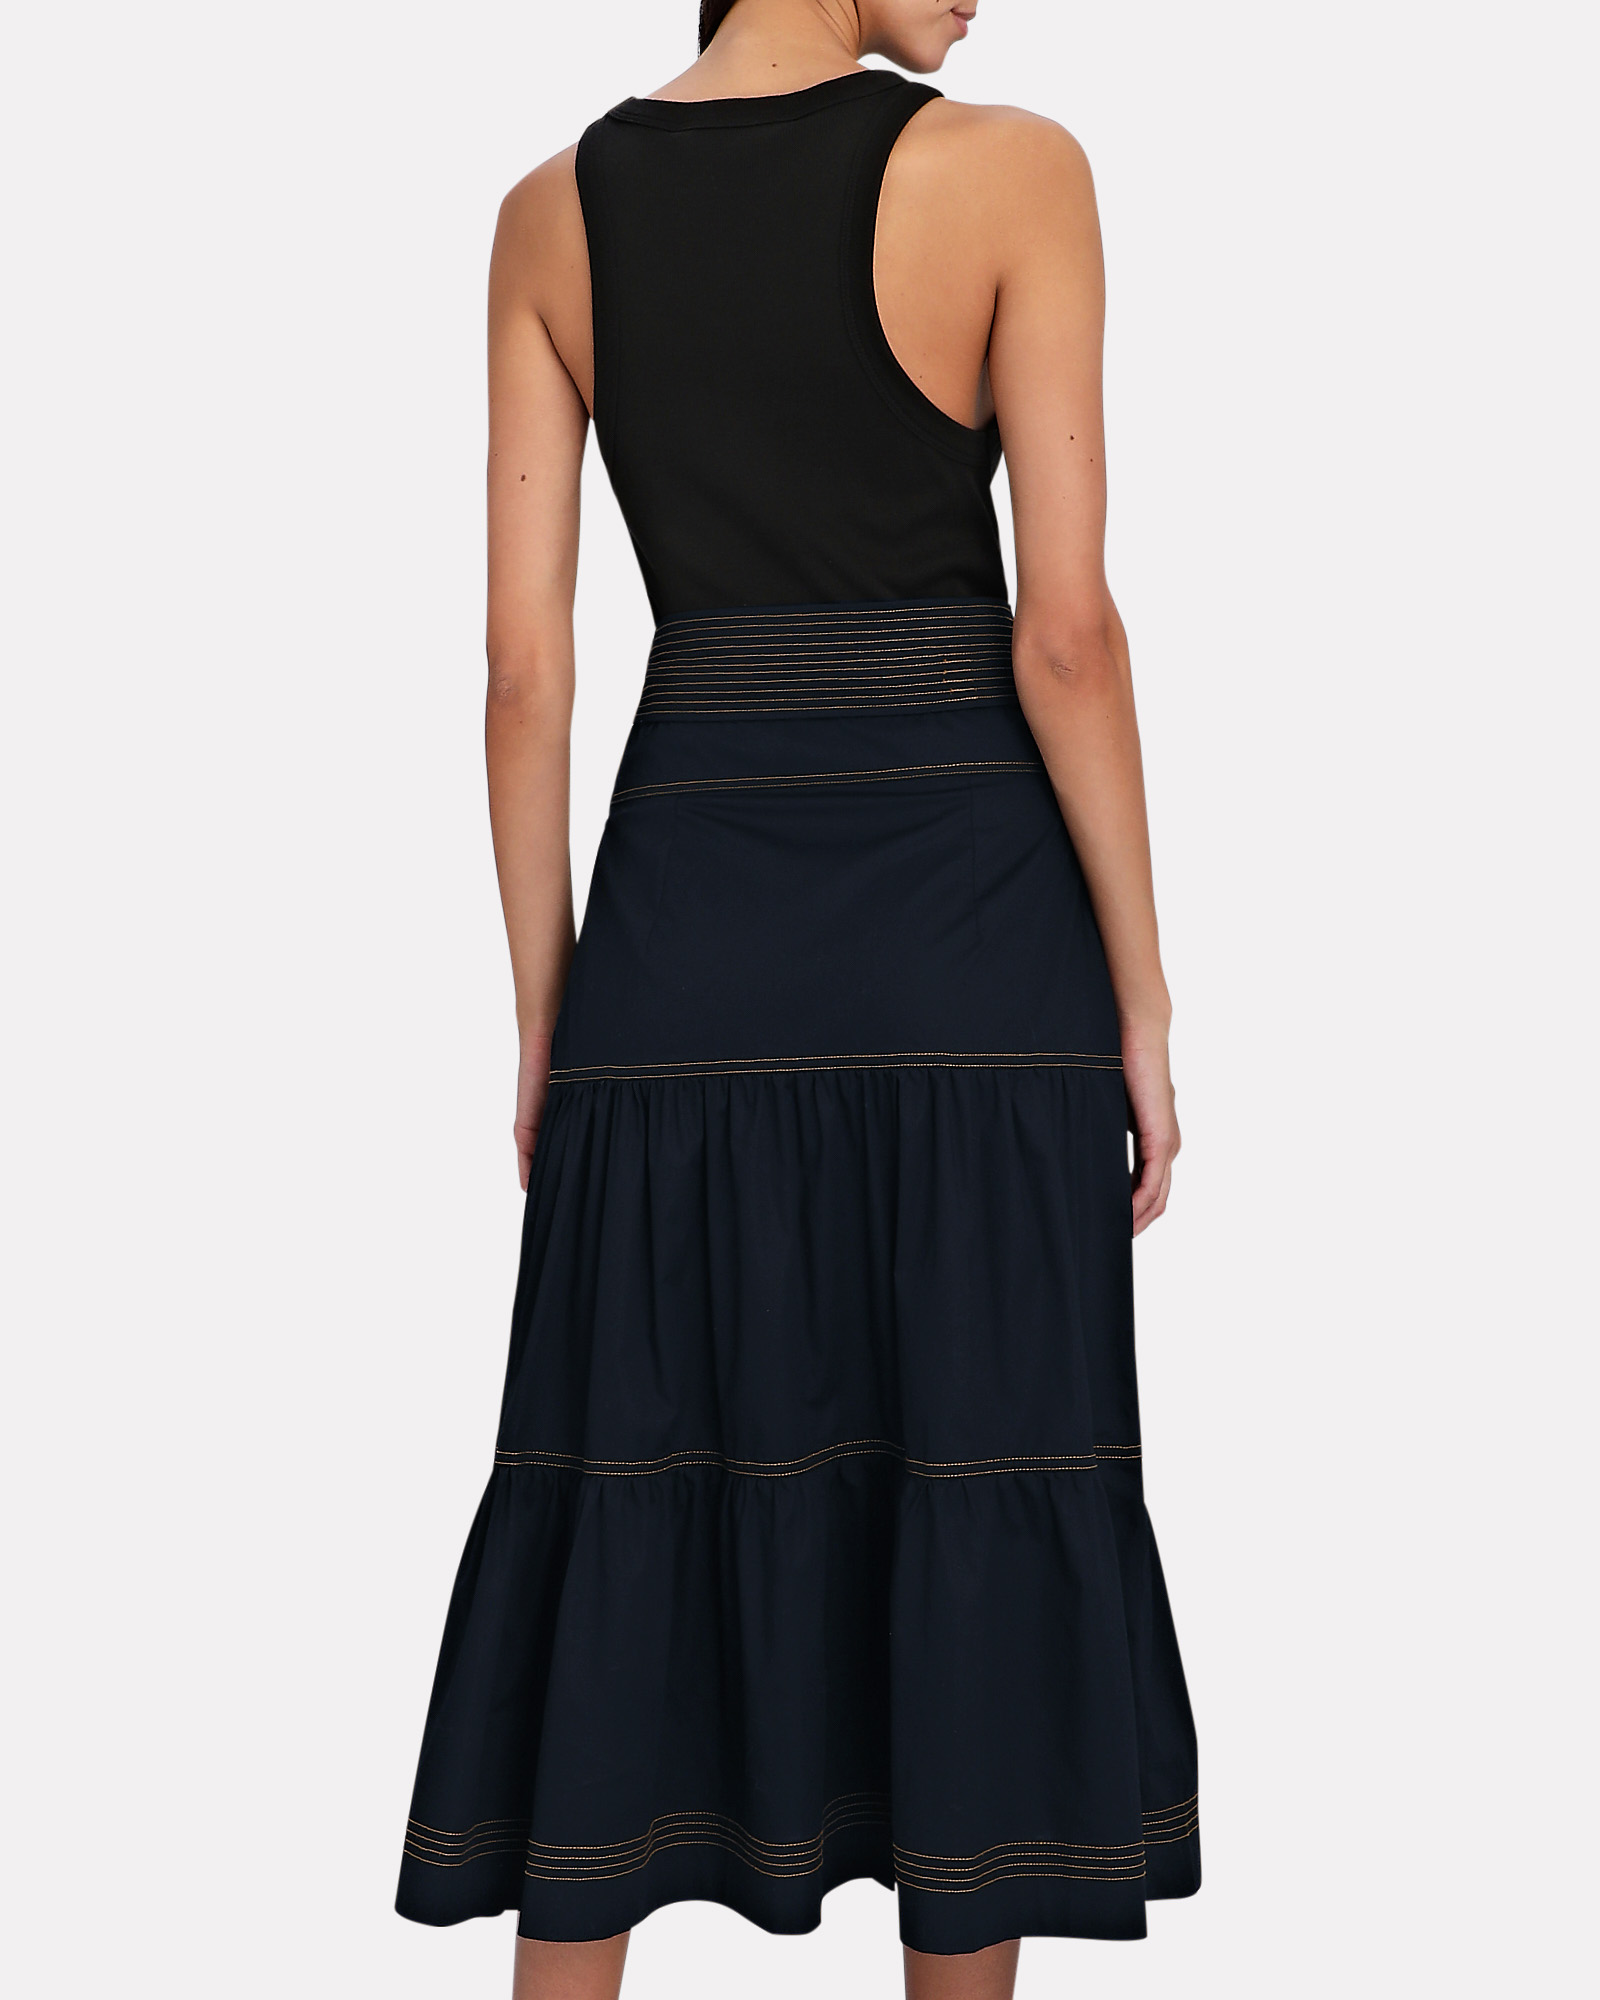 Veronica Beard Austyn Tie-Waist Midi Dress in Black | INTERMIX®